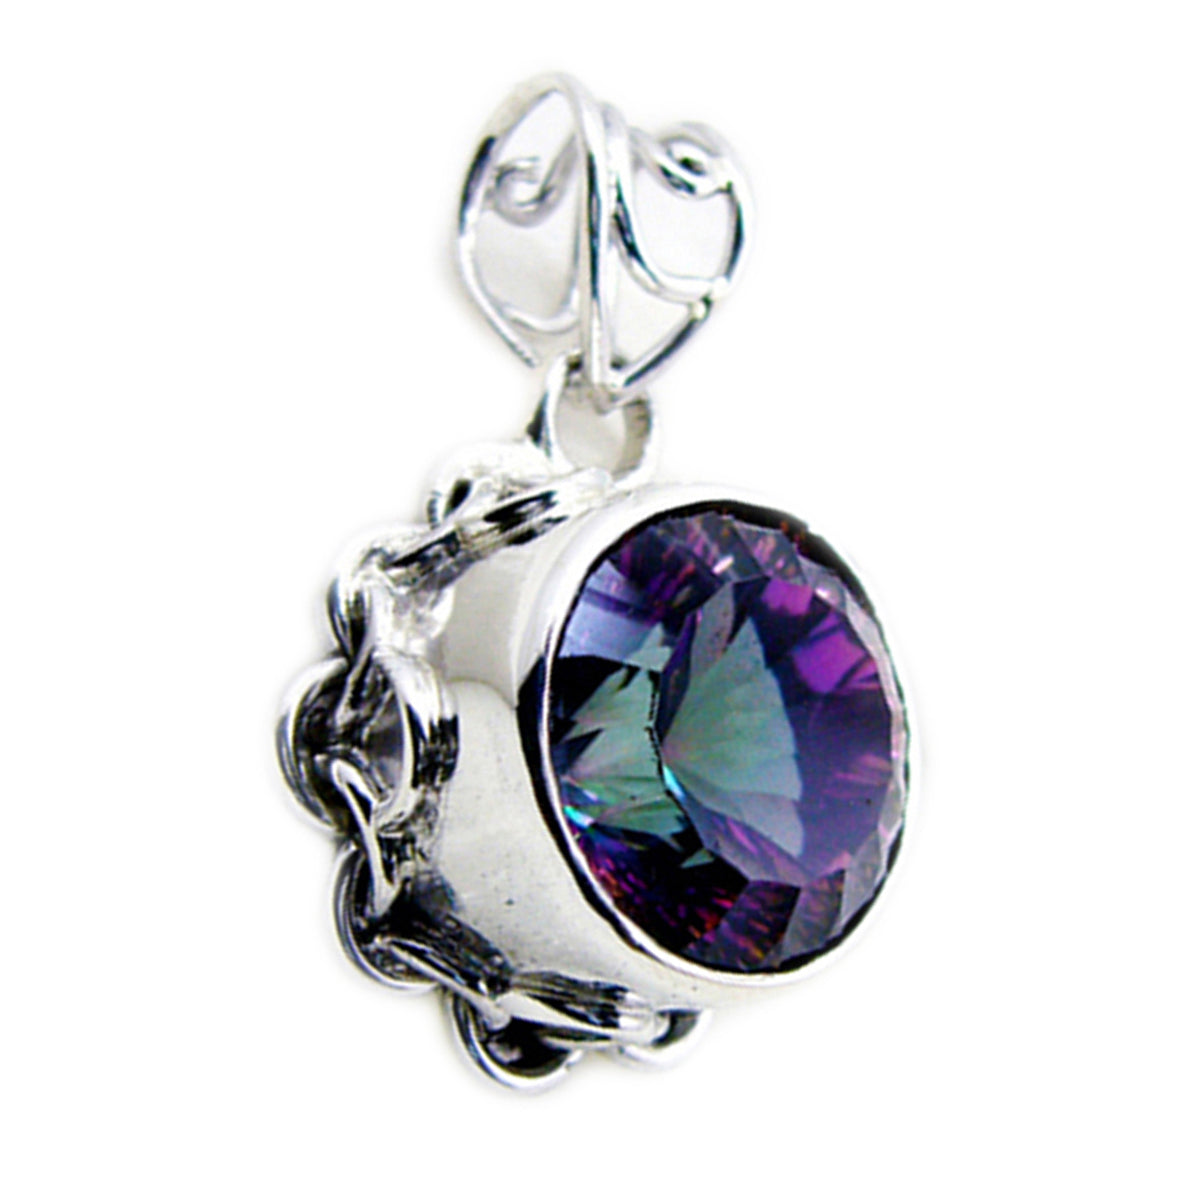 riyo beddable pierre précieuse ronde à facettes multicolore quartz mystique pendentif en argent sterling cadeau pour un ami